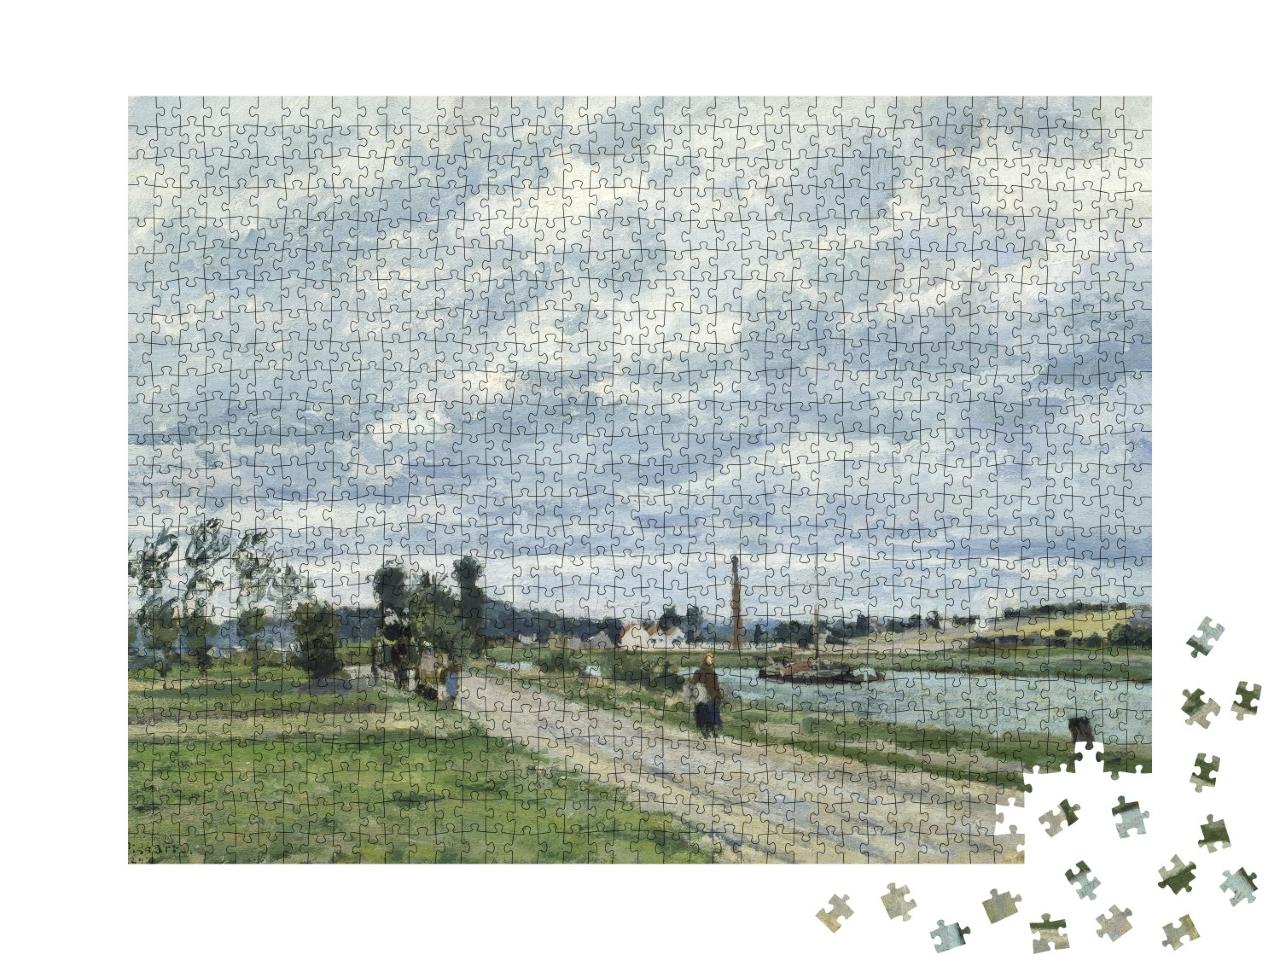 Puzzle 1000 Teile „Camille Pissarro - Die Ufer der Oise bei Pontoise“